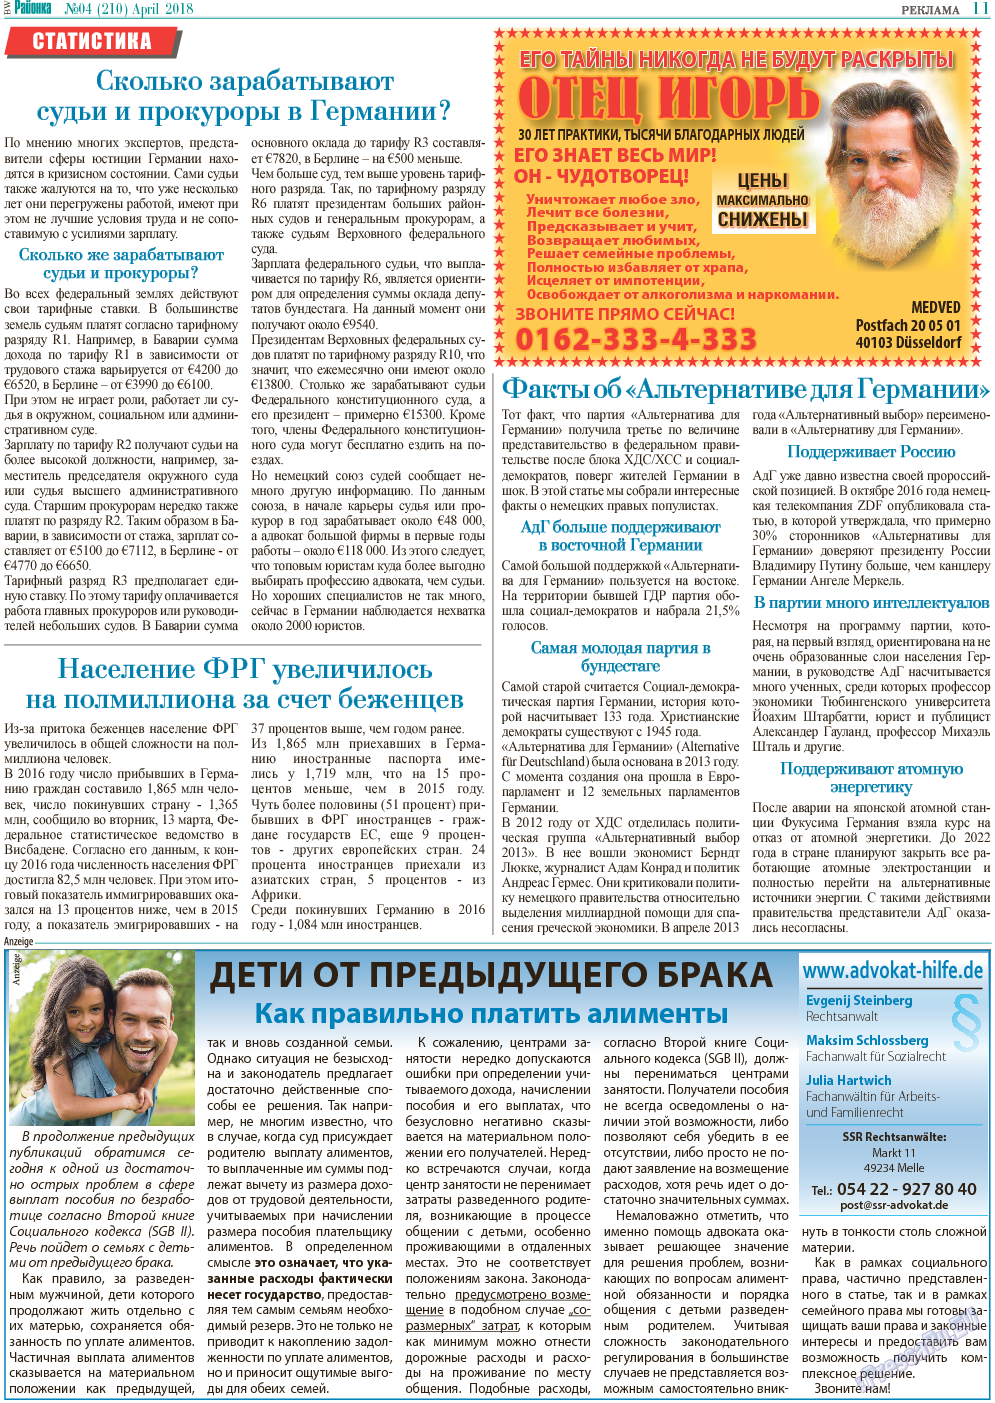 Районка-Süd-West, газета. 2018 №4 стр.11